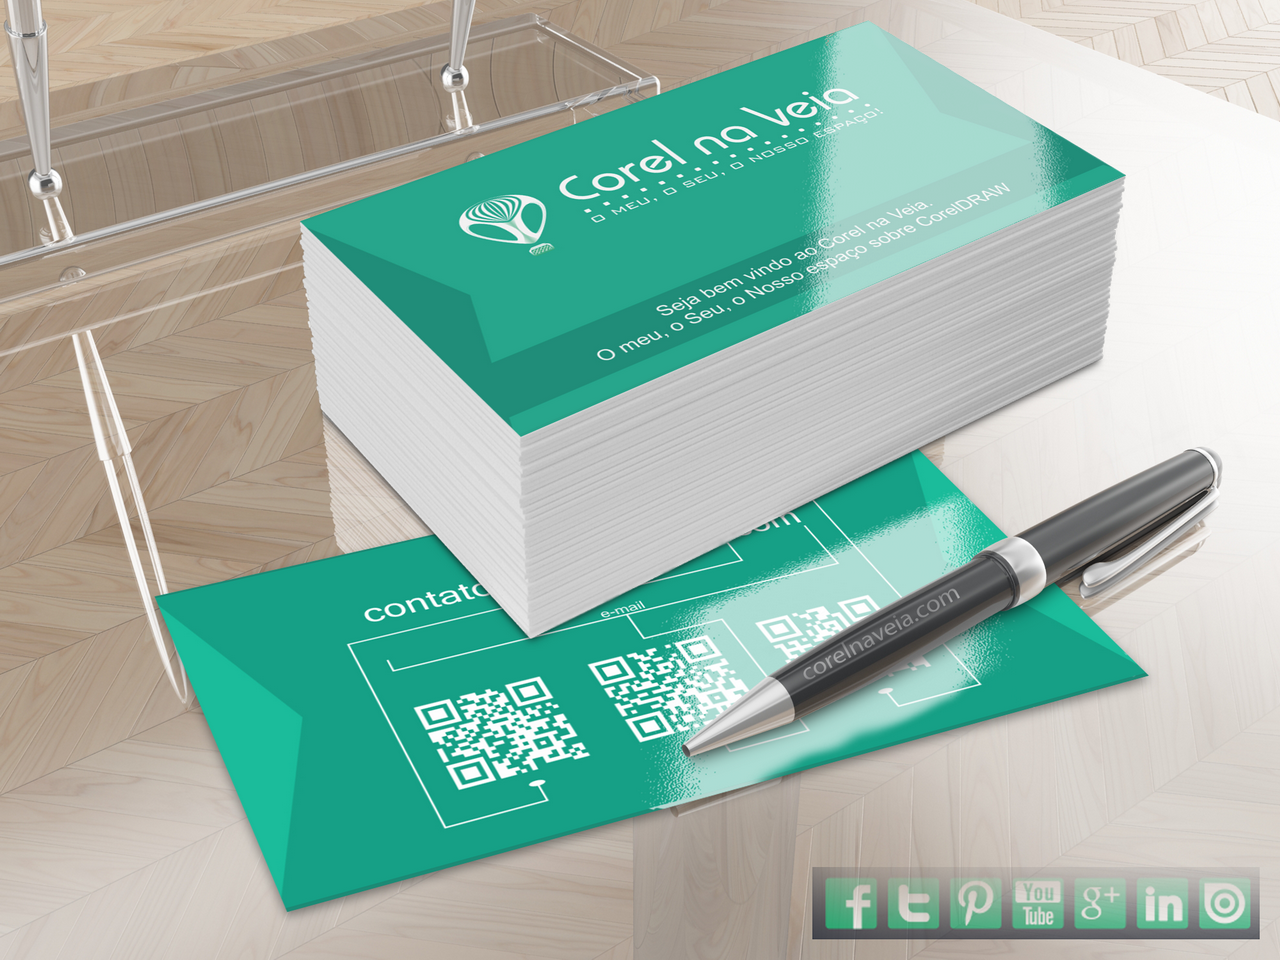 Download Cartão de Visitas UI Contact Minimalista FREE Vector.CDR ...